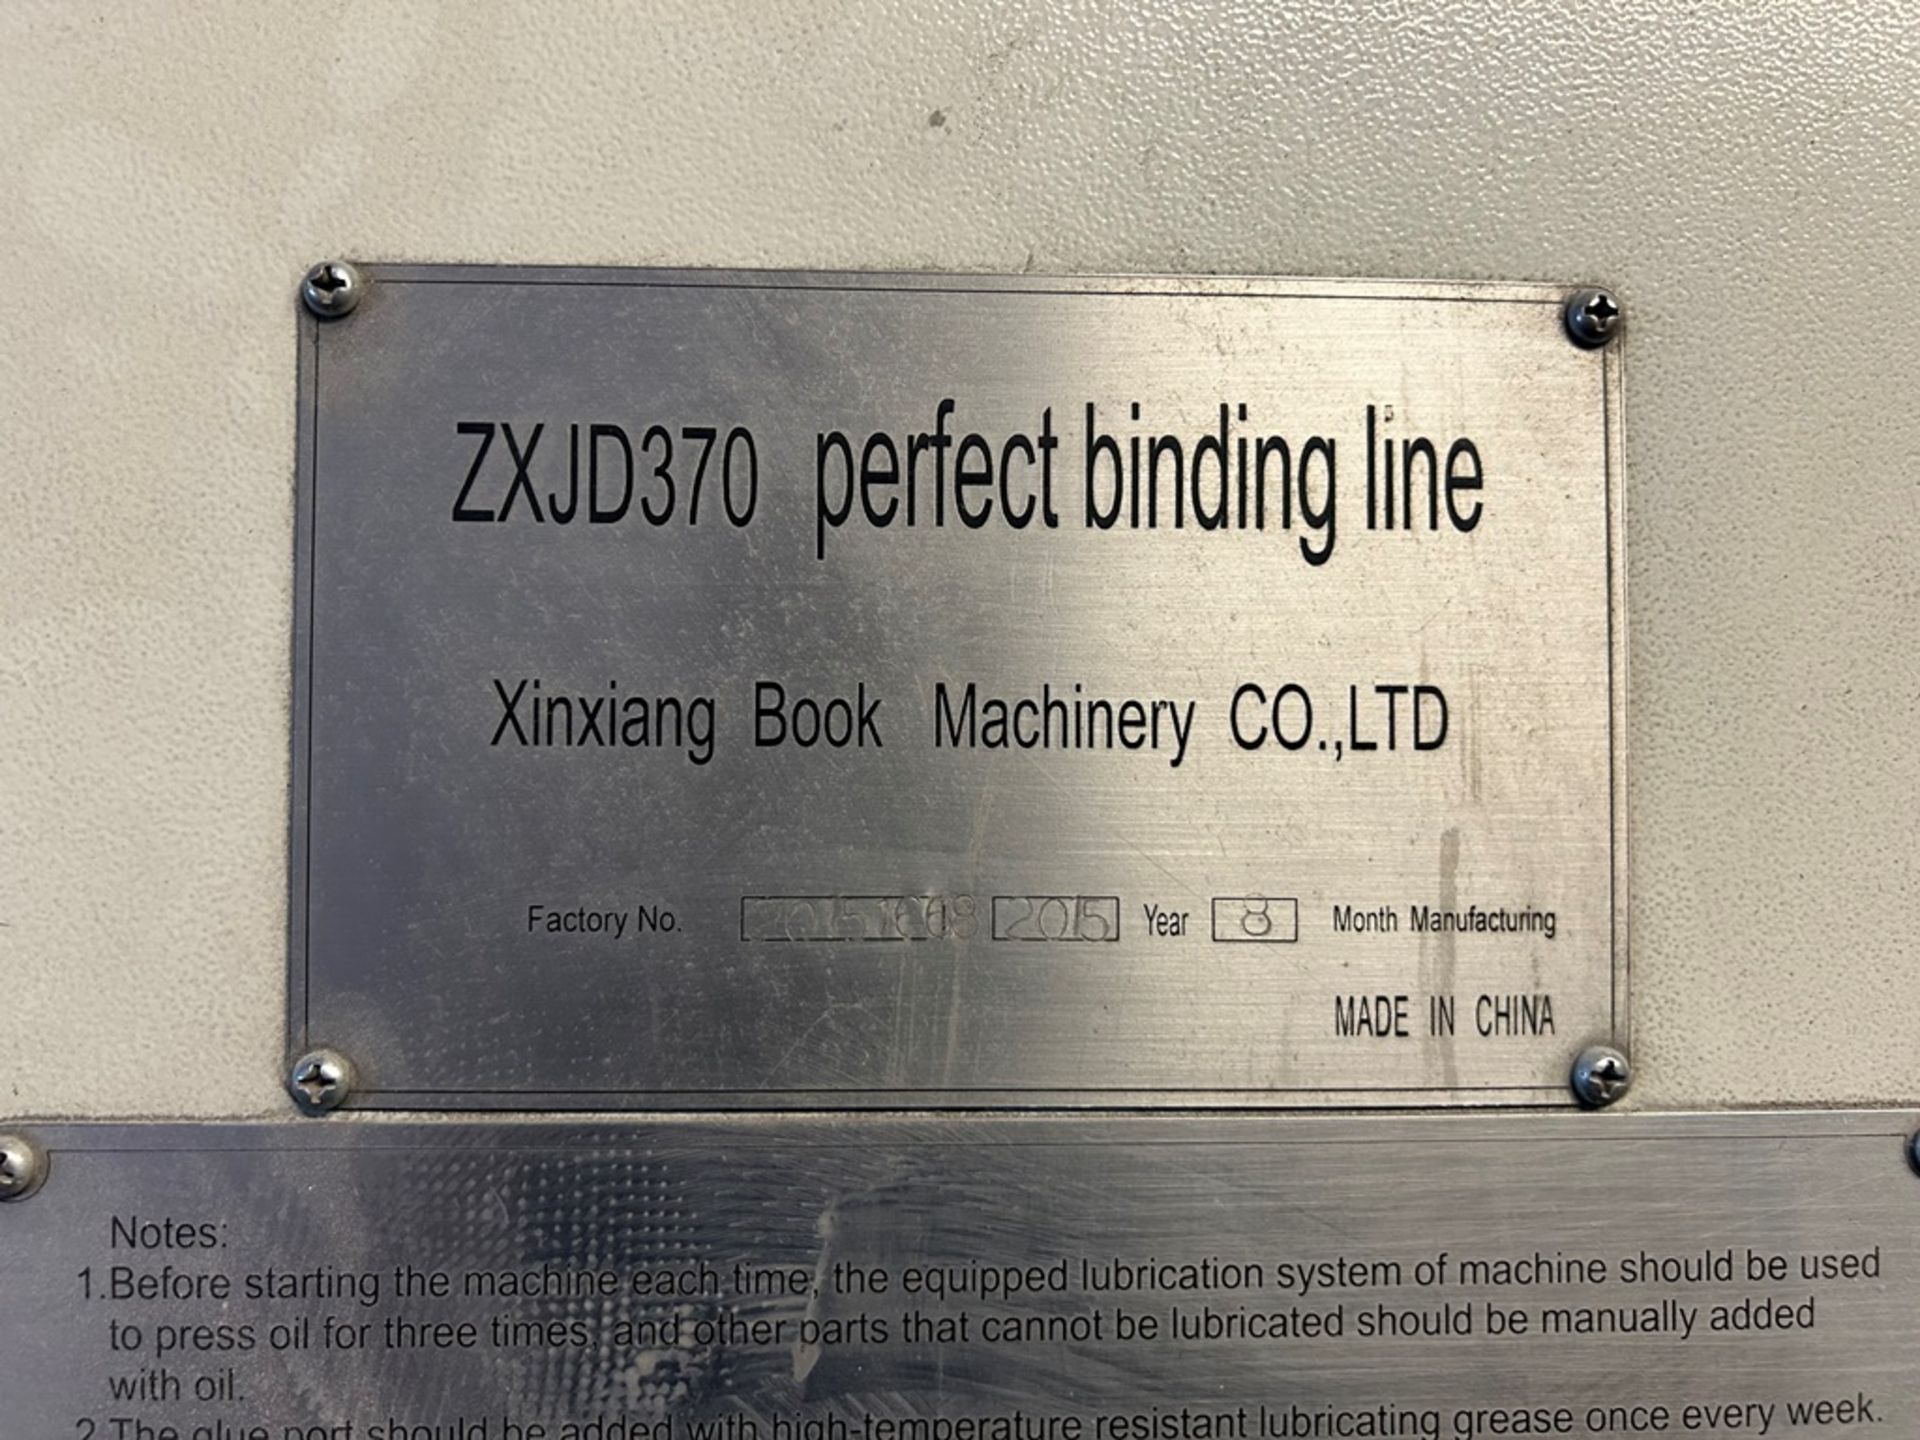 XINXIANG BOX MACHINARY 9 jaw book binding machine, Model E-BOOK ZXJD370, Serial No. 20151668, Year - Image 17 of 27